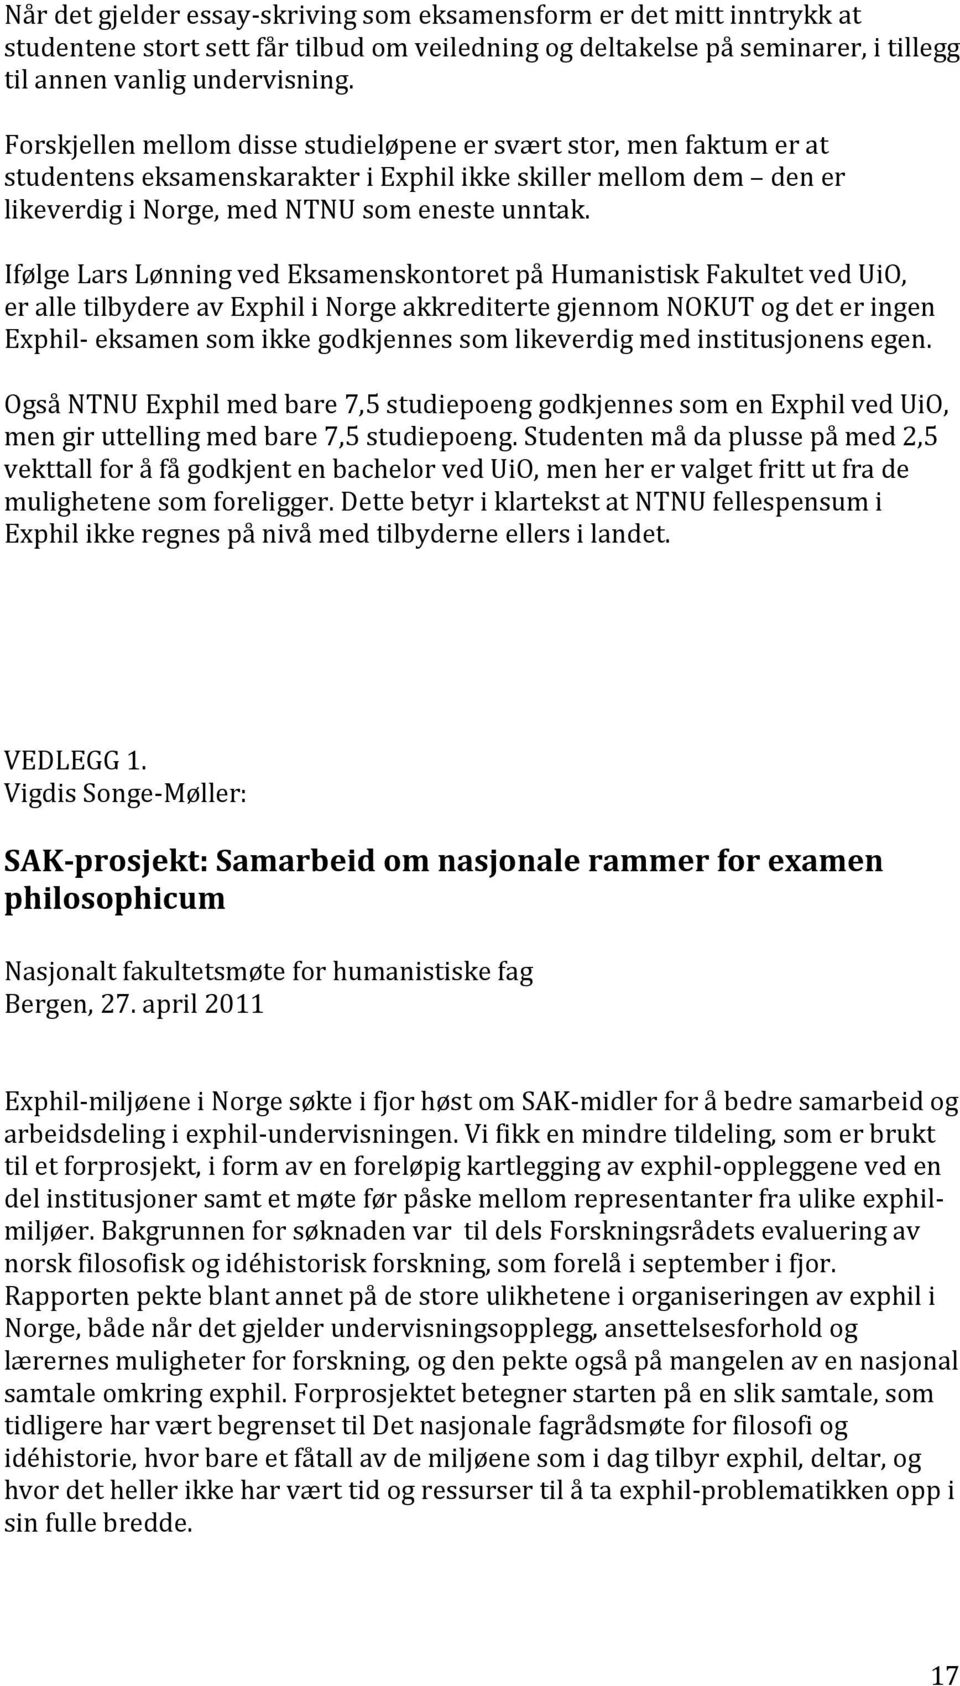 Ifølge Lars Lønning ved Eksamenskontoret på Humanistisk Fakultet ved UiO, er alle tilbydere av Exphil i Norge akkrediterte gjennom NOKUT og det er ingen Exphil- eksamen som ikke godkjennes som